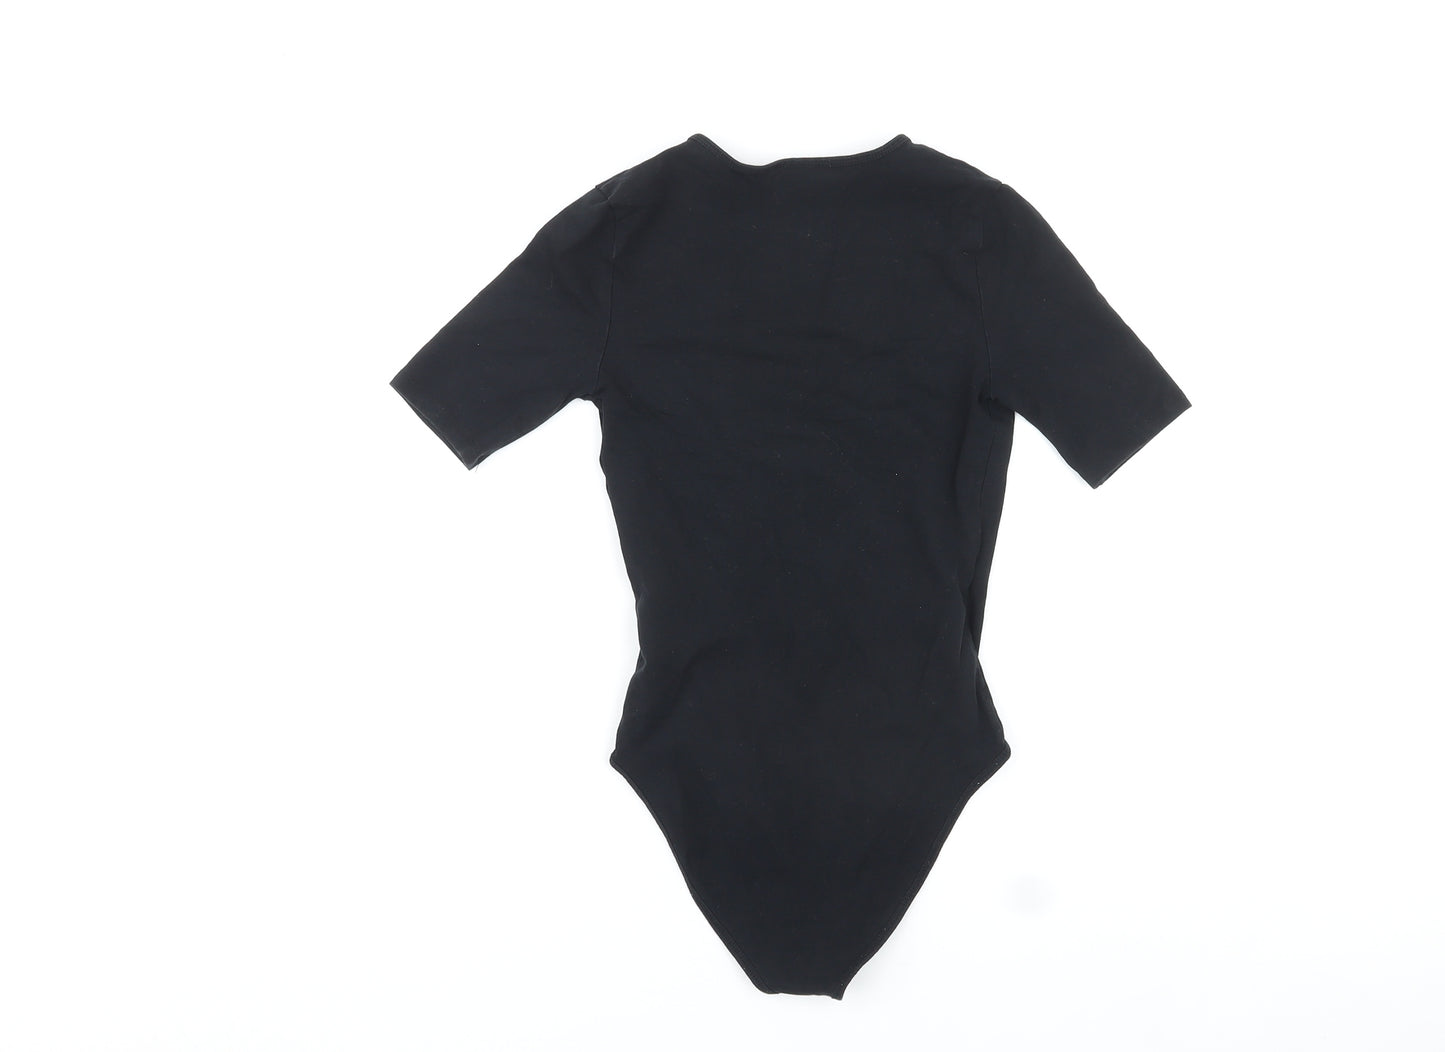 Topshop Womens Black Cotton Bodysuit One-Piece Size 8 Snap